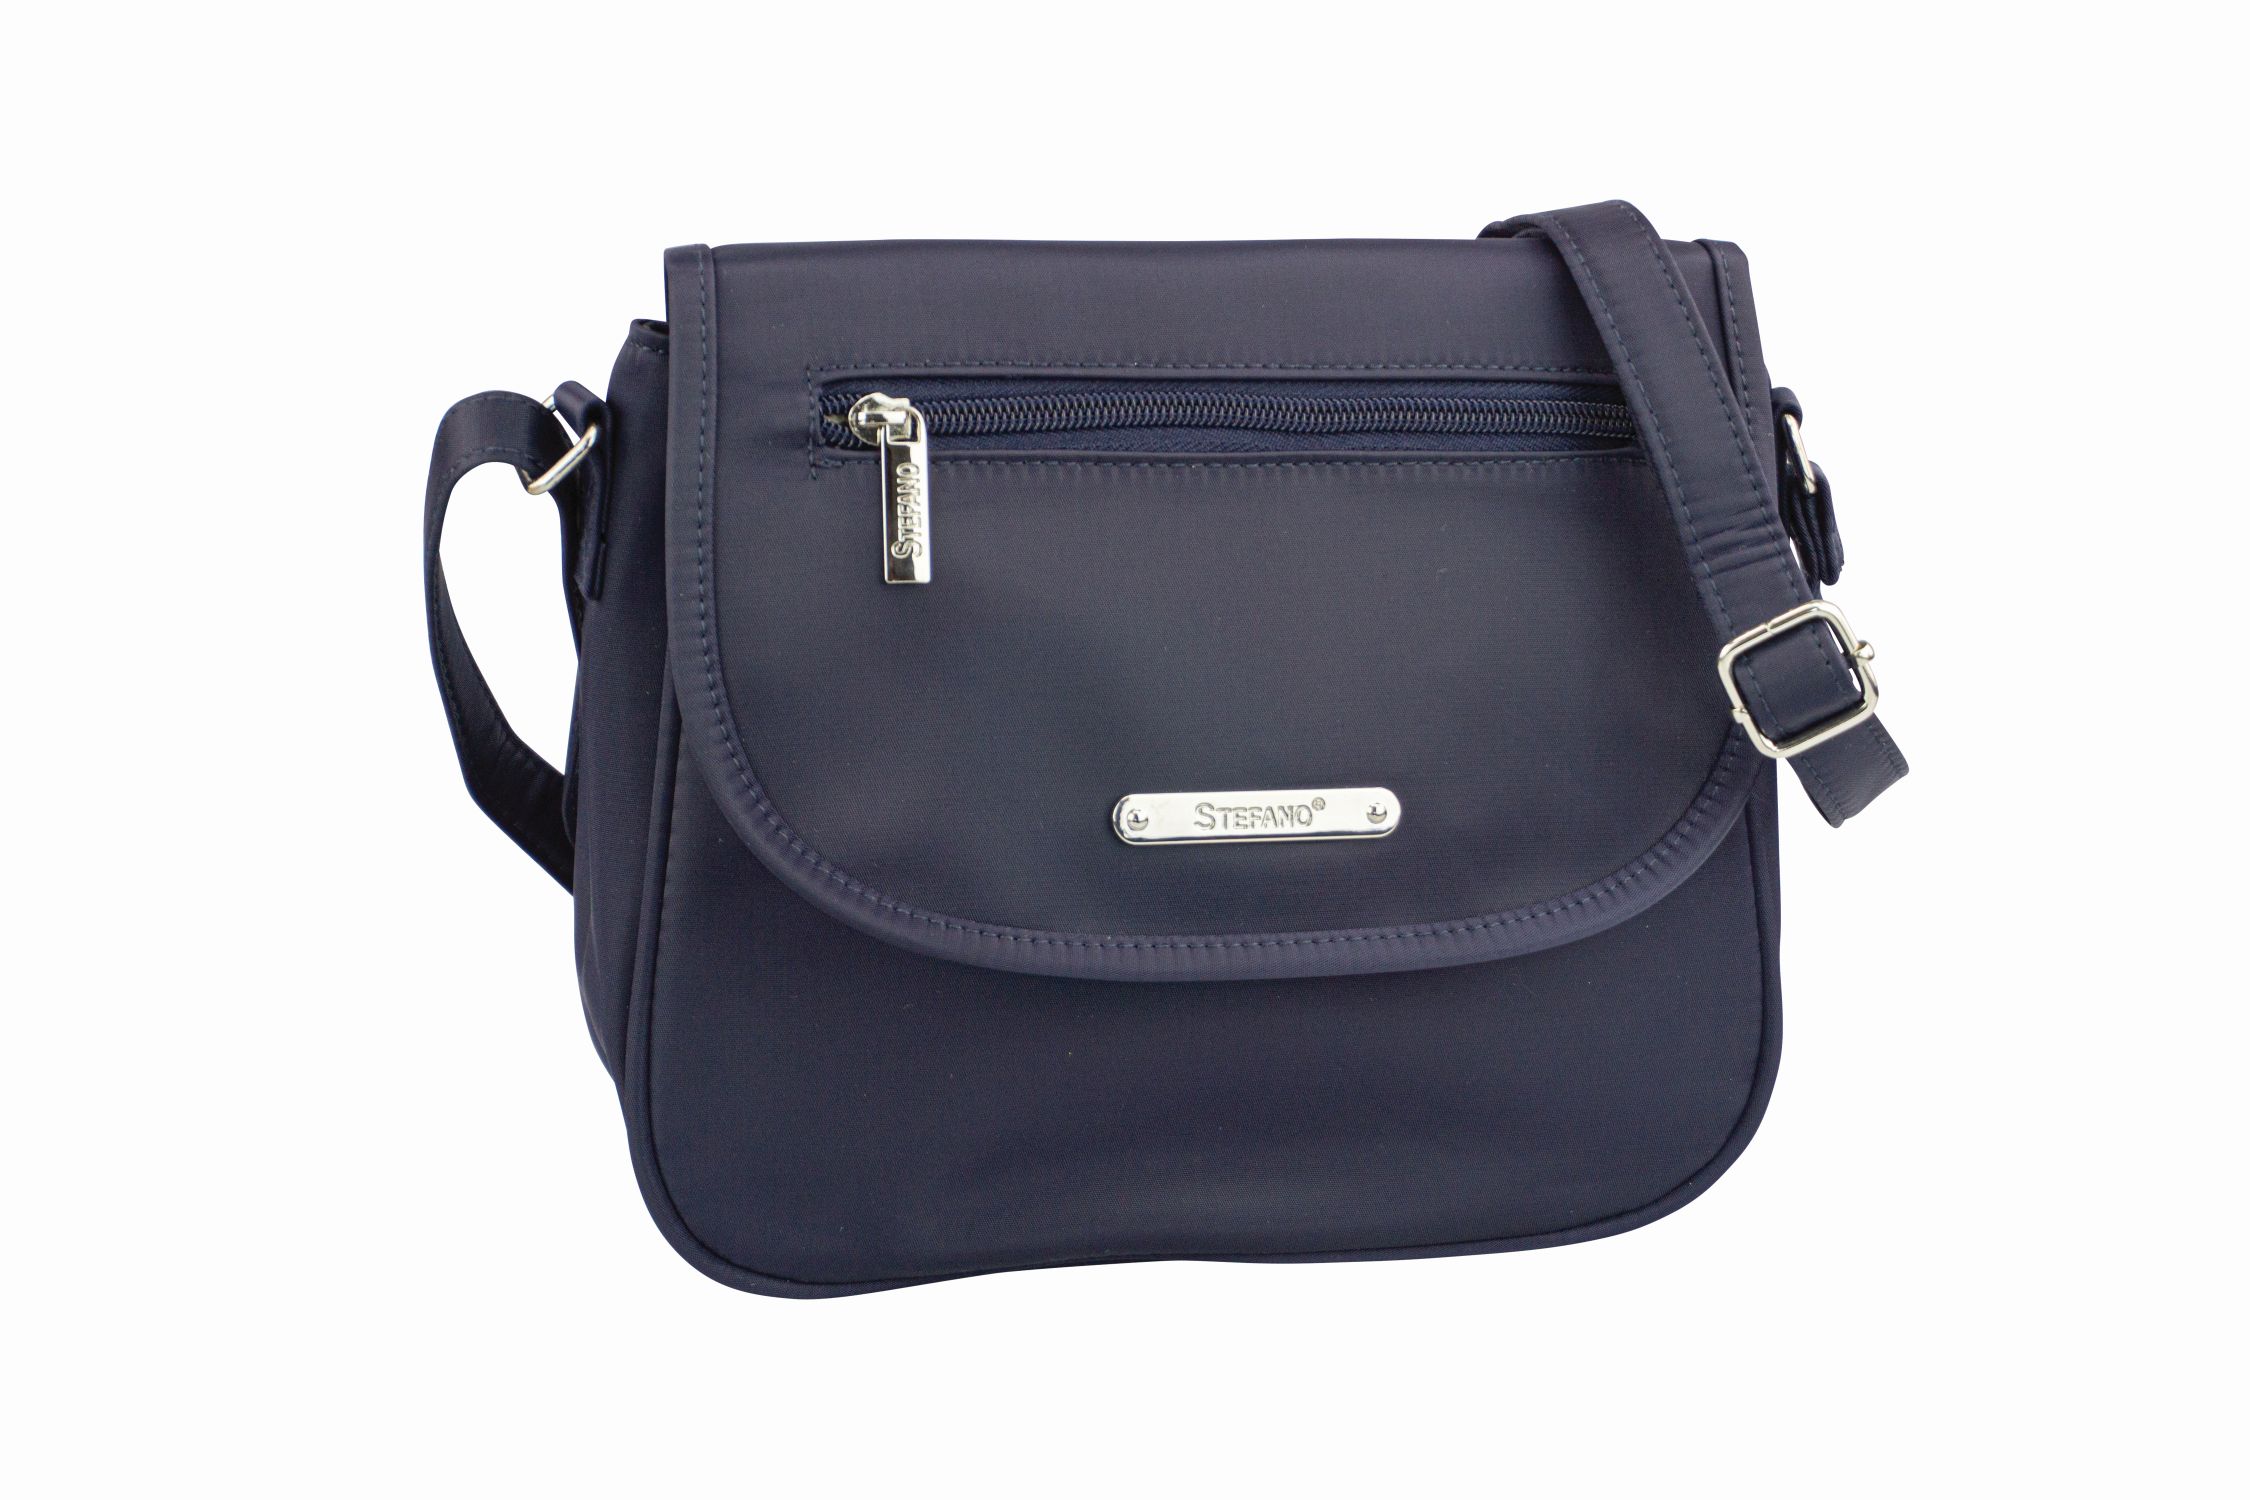 Überschlagtasche "Federleicht" in blau von Stefano aus Nylon - 917-134-65